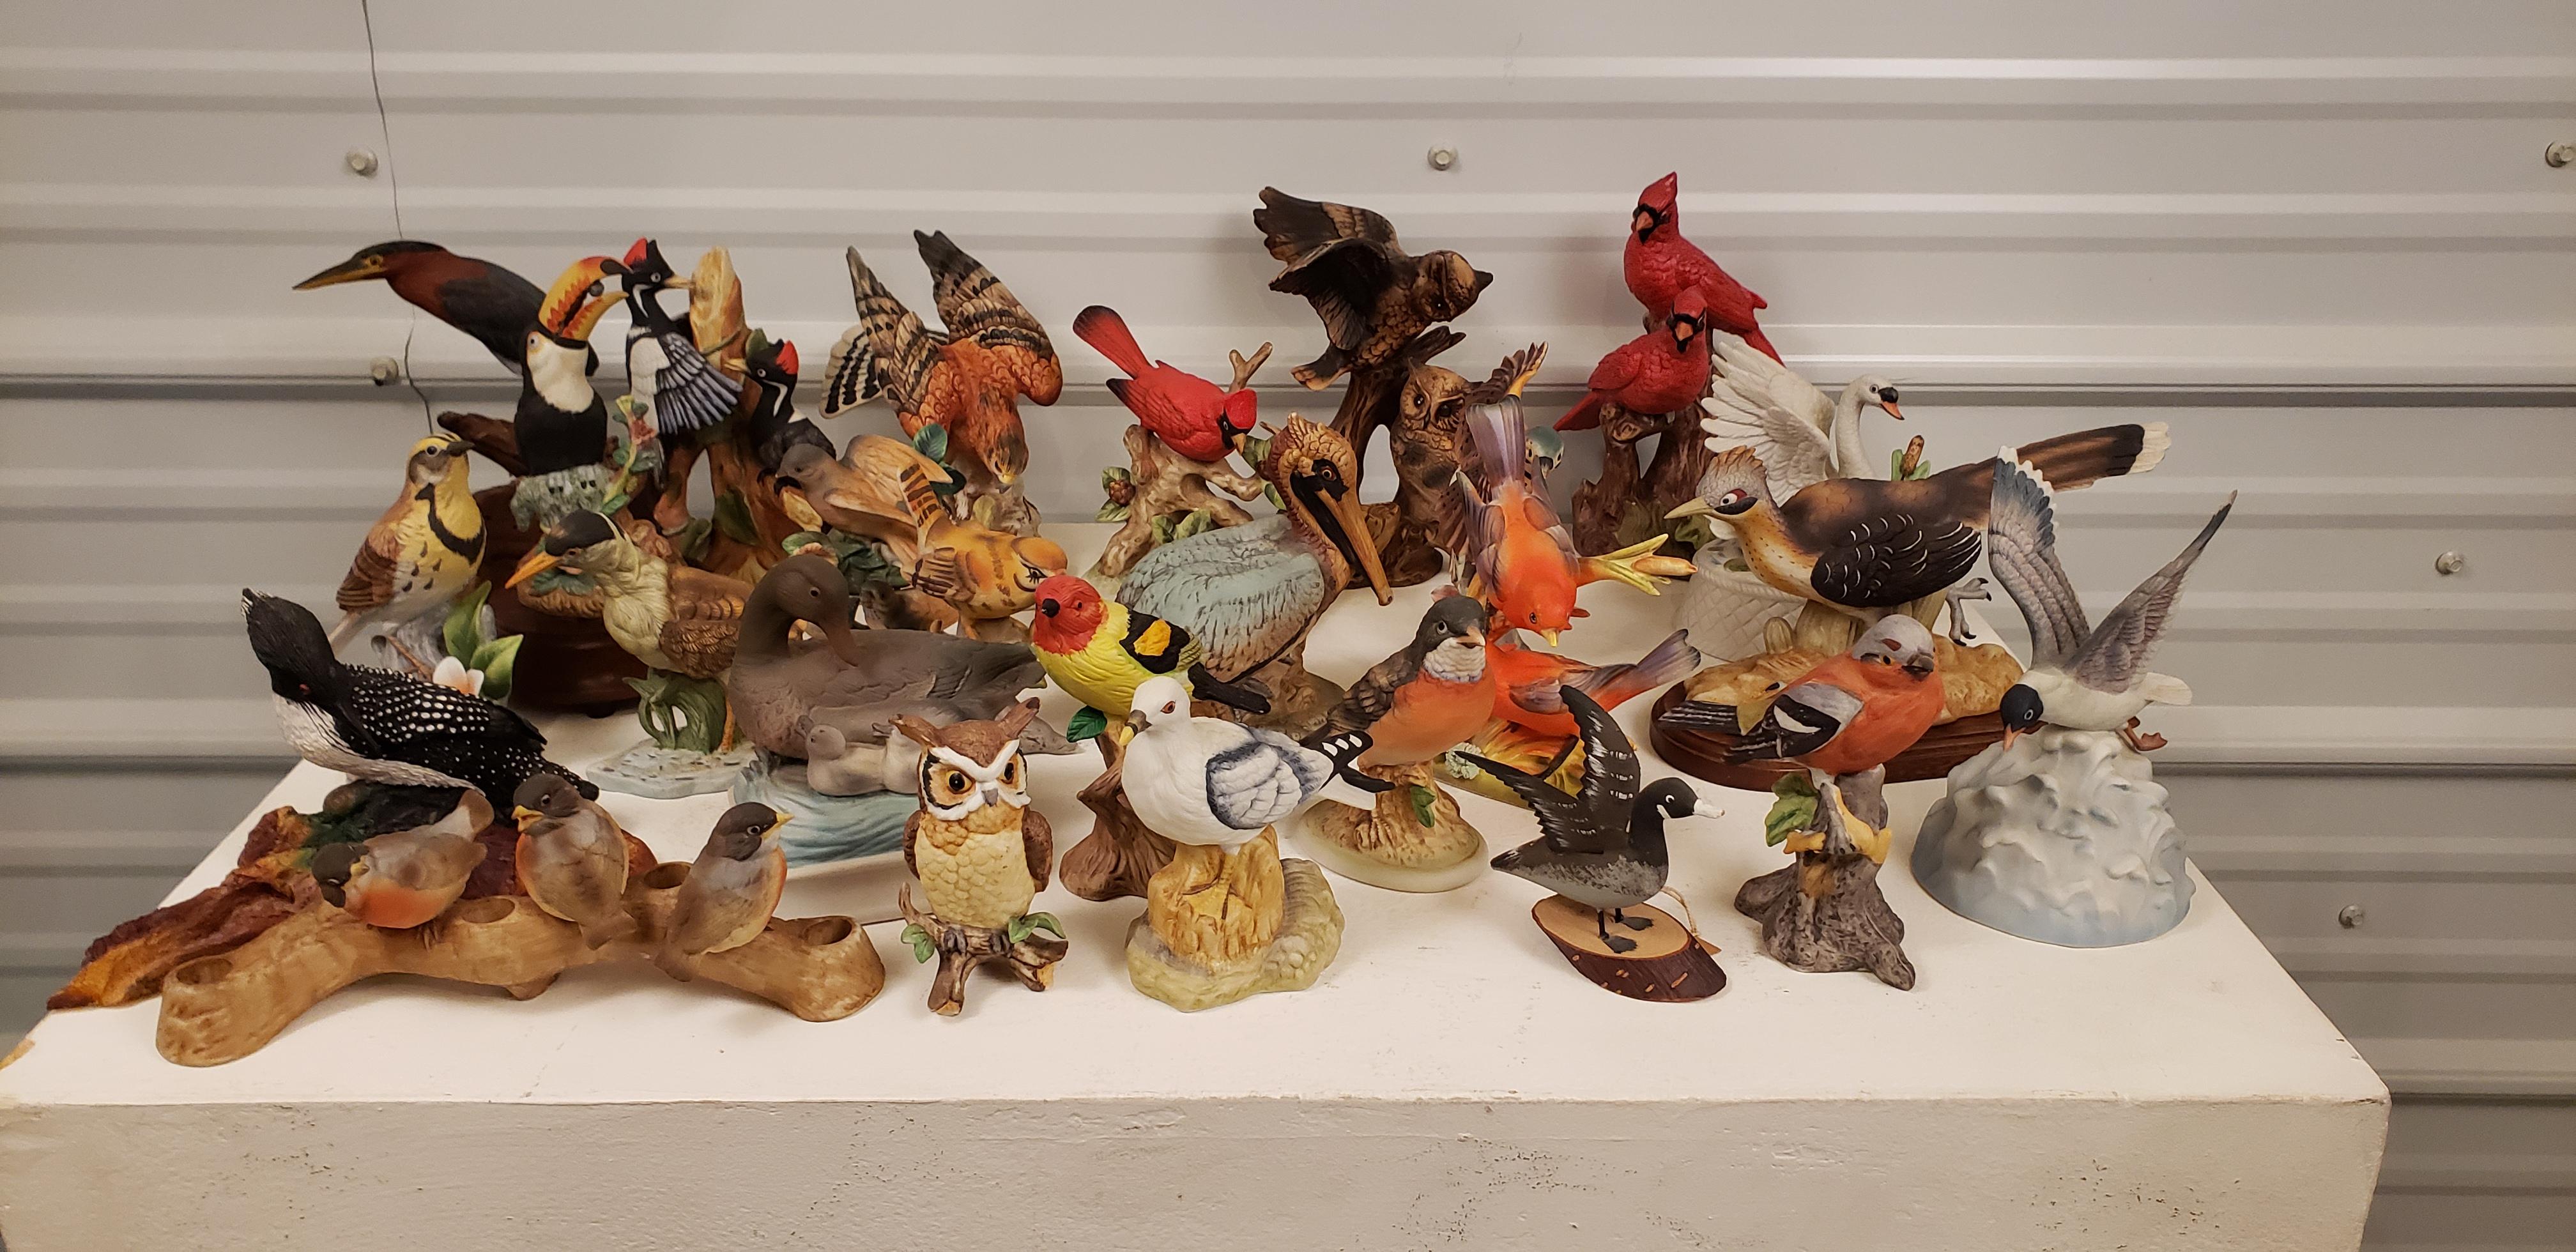 Une collection d'oiseaux de toute une vie. Un ensemble de 25 pièces, certaines en porcelaine, d'autres sculptées dans le bois ou la résine. Sur les 25, 5 sont des boîtes à musique. 
 En fait, je pense que c'est tout à fait charmant.
 Les tailles